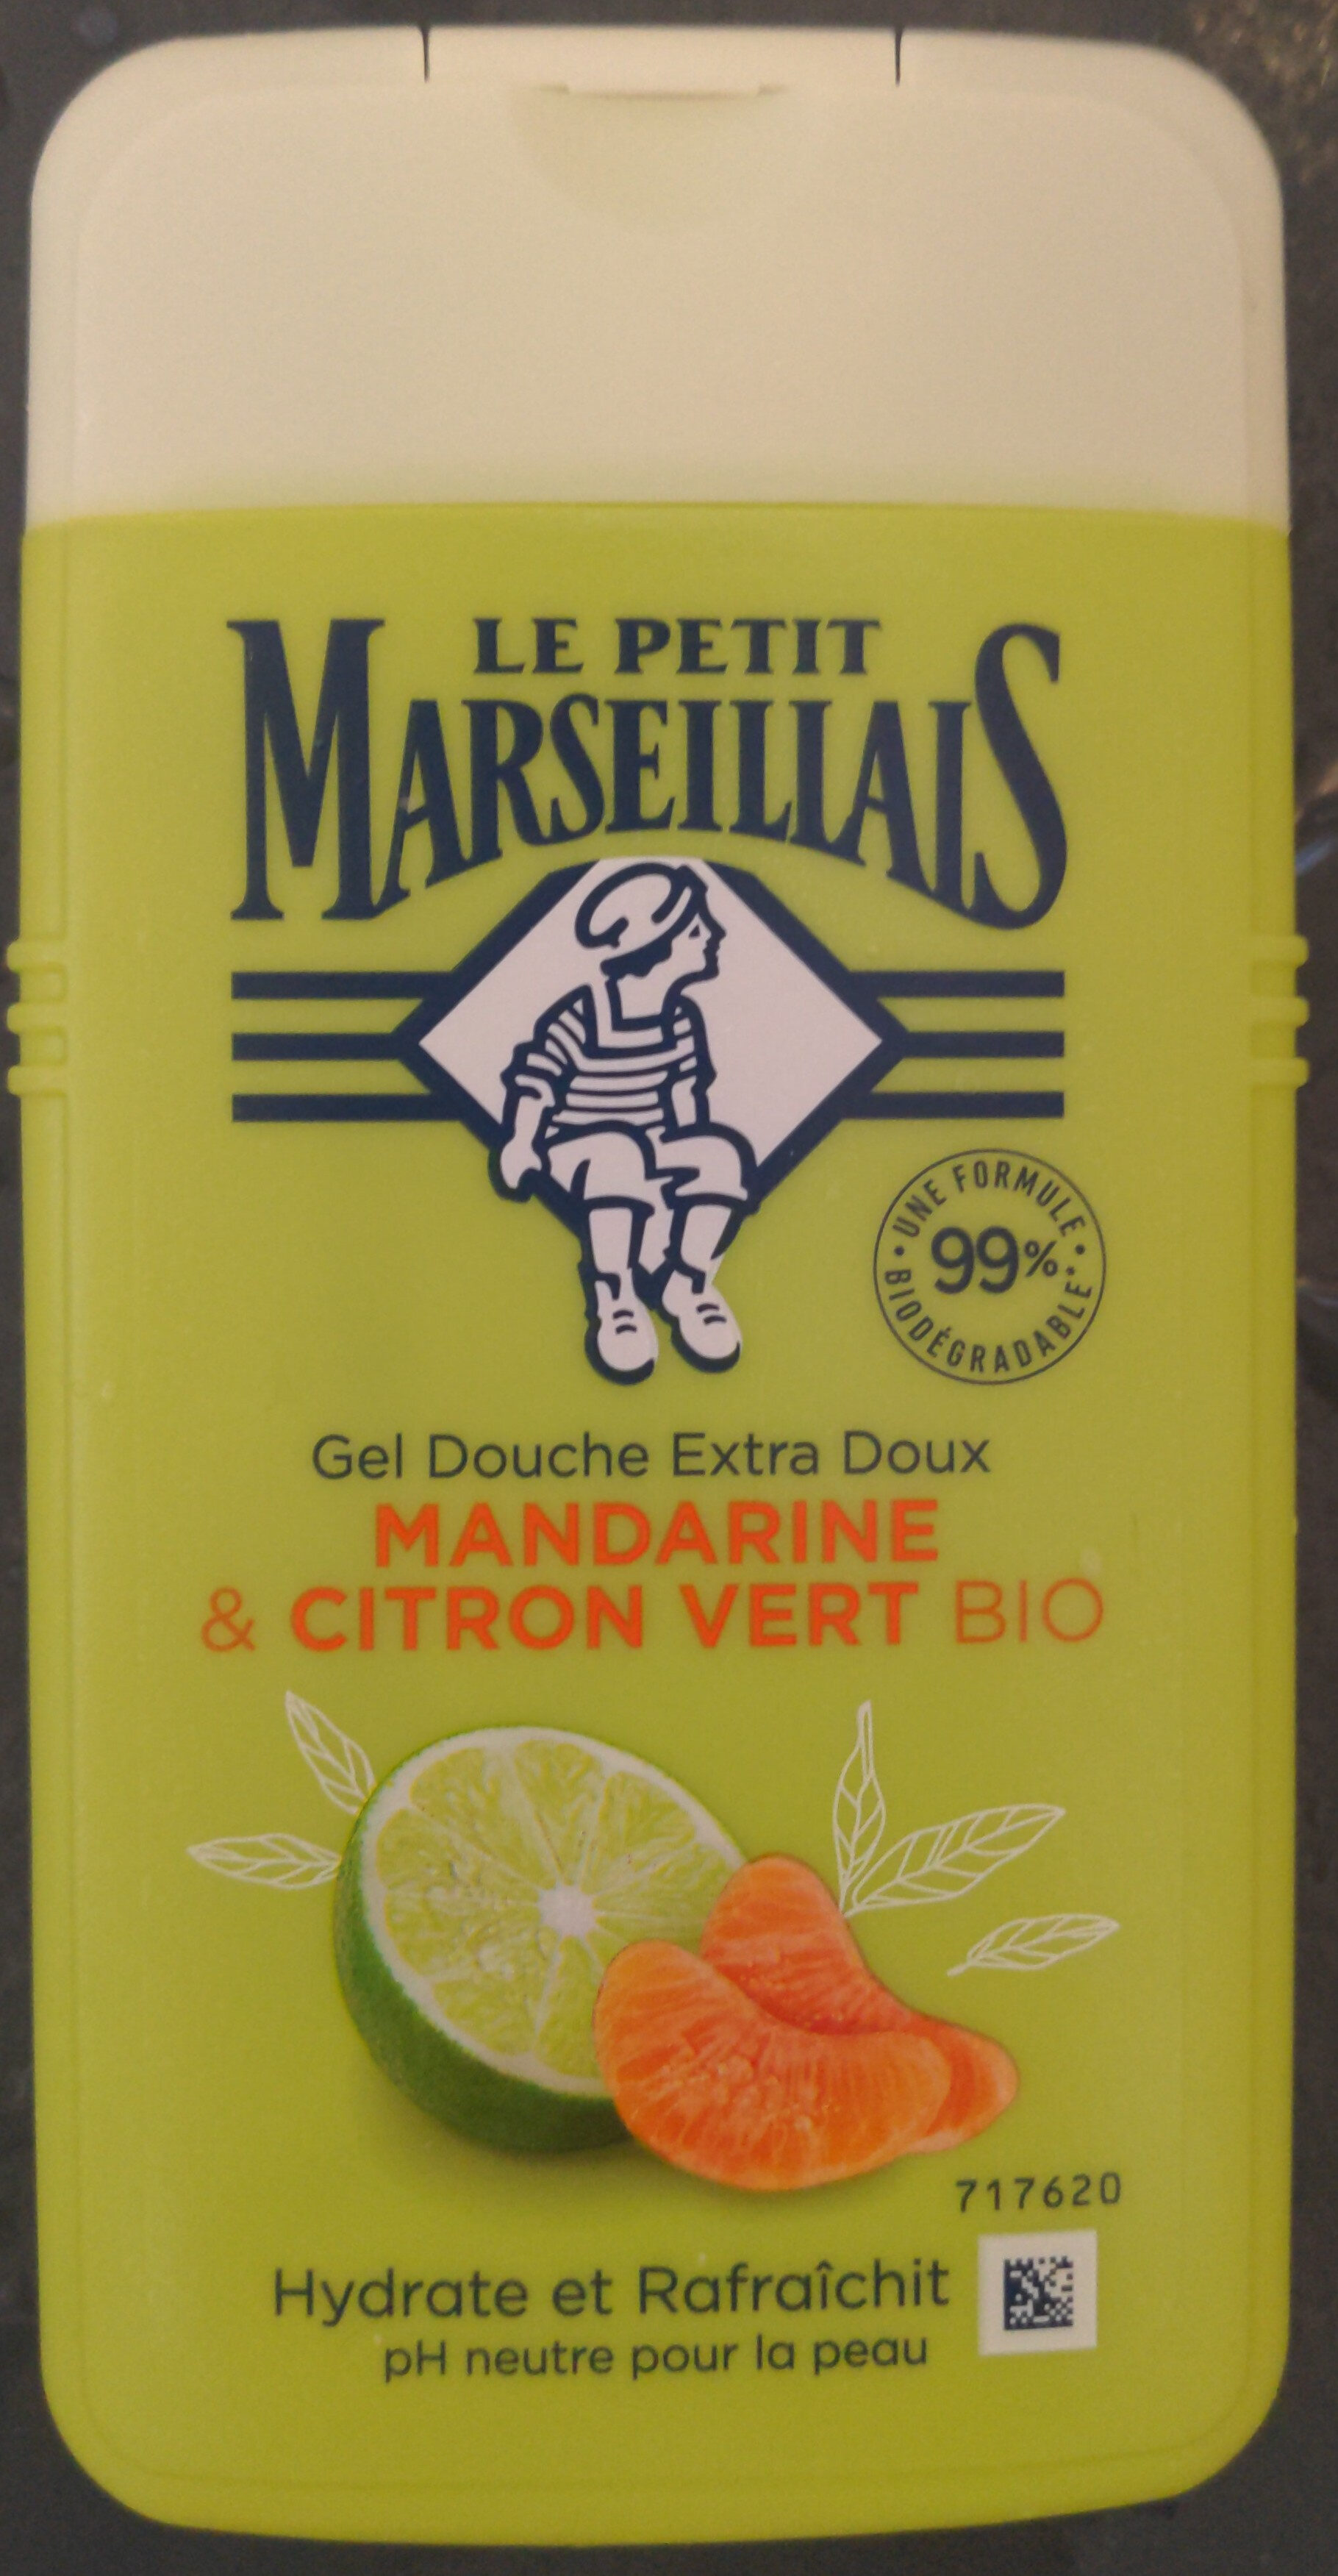 Gel douche extra doux mandarine & citron vert bio - Produkt - fr